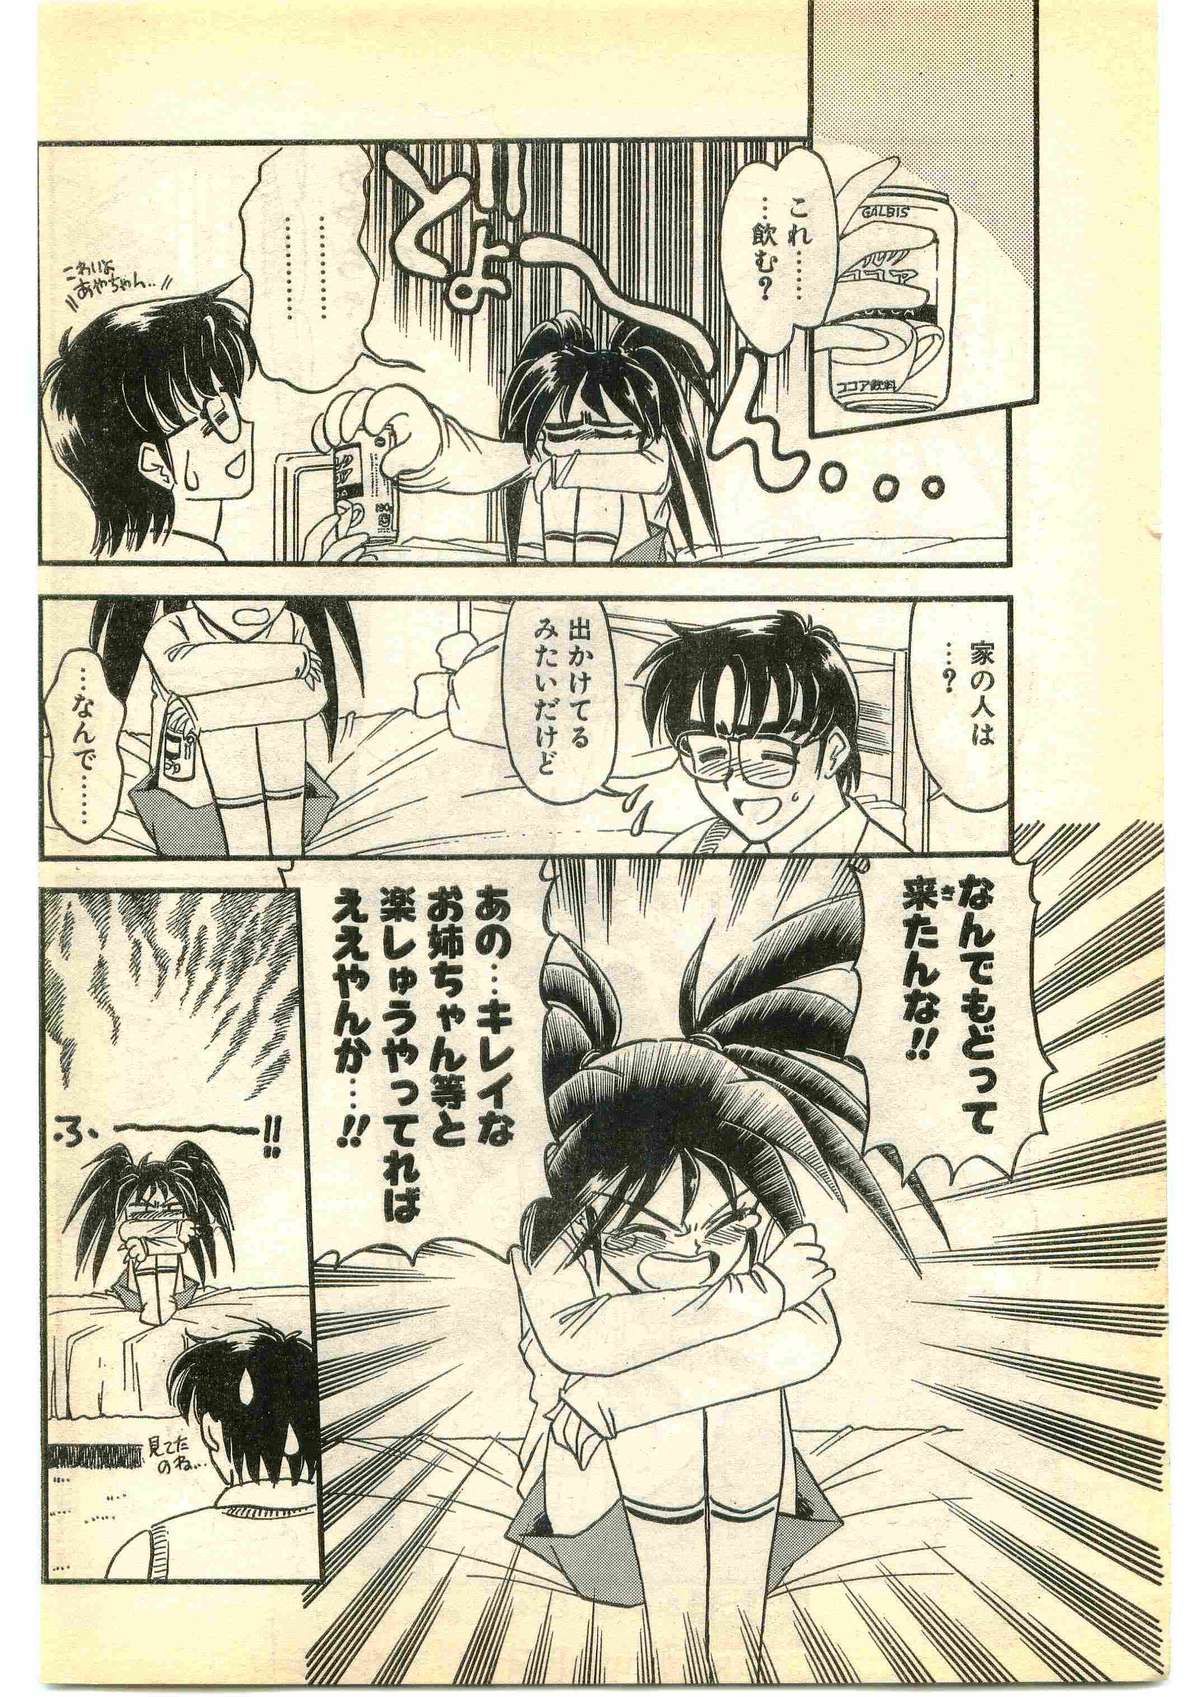 COMIC パピポ外伝 1995年1月号